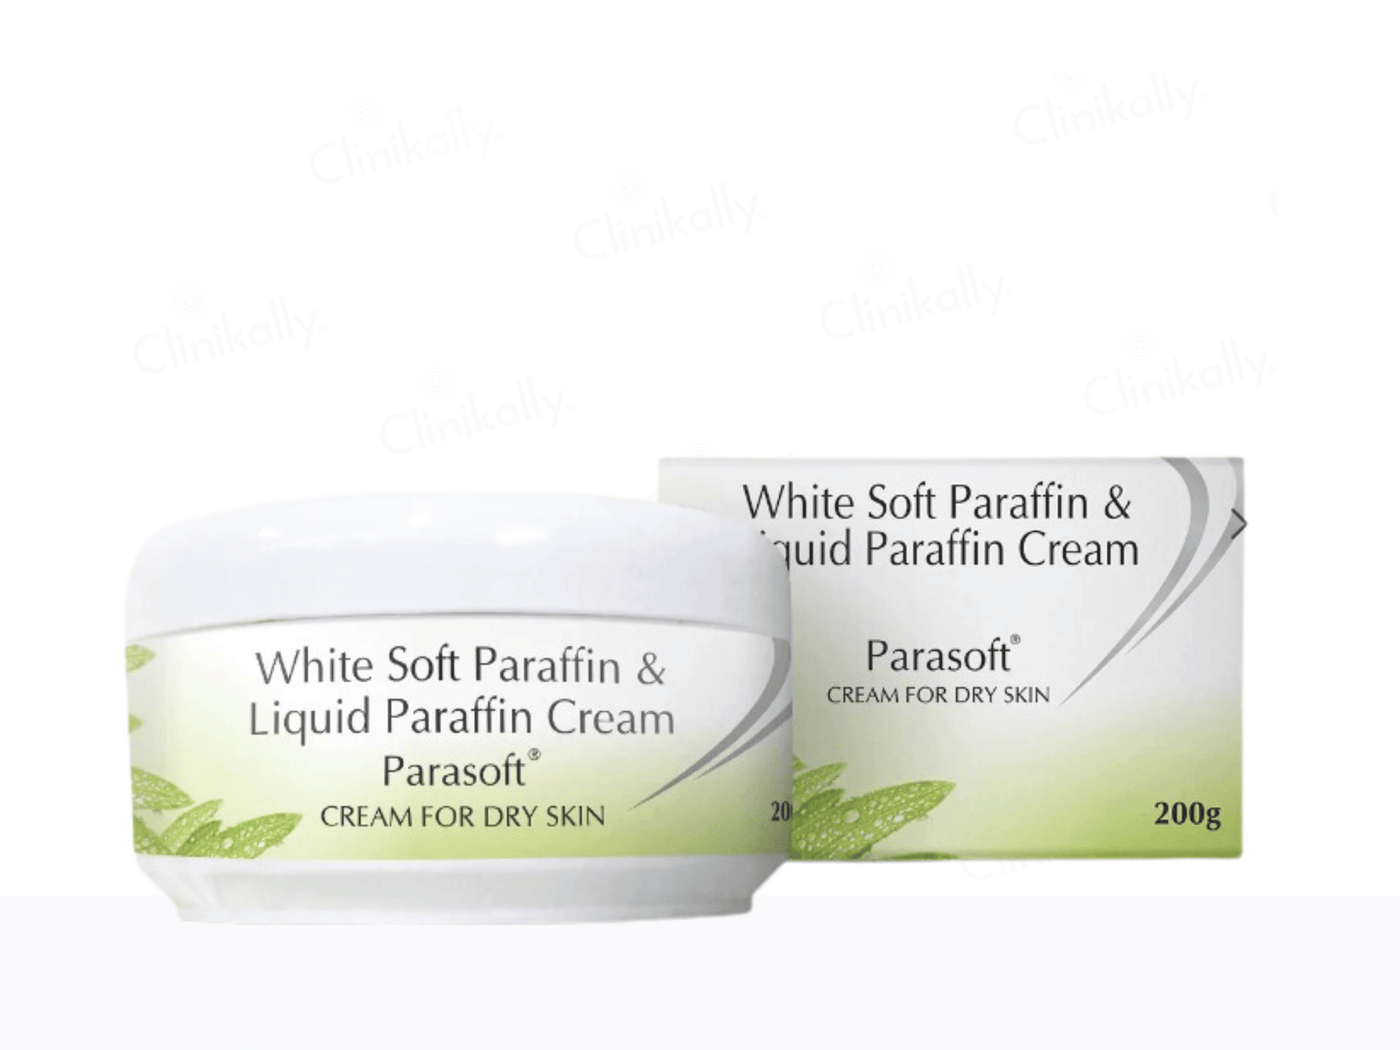 Parasoft Cream For Dry Skin - Clinikally